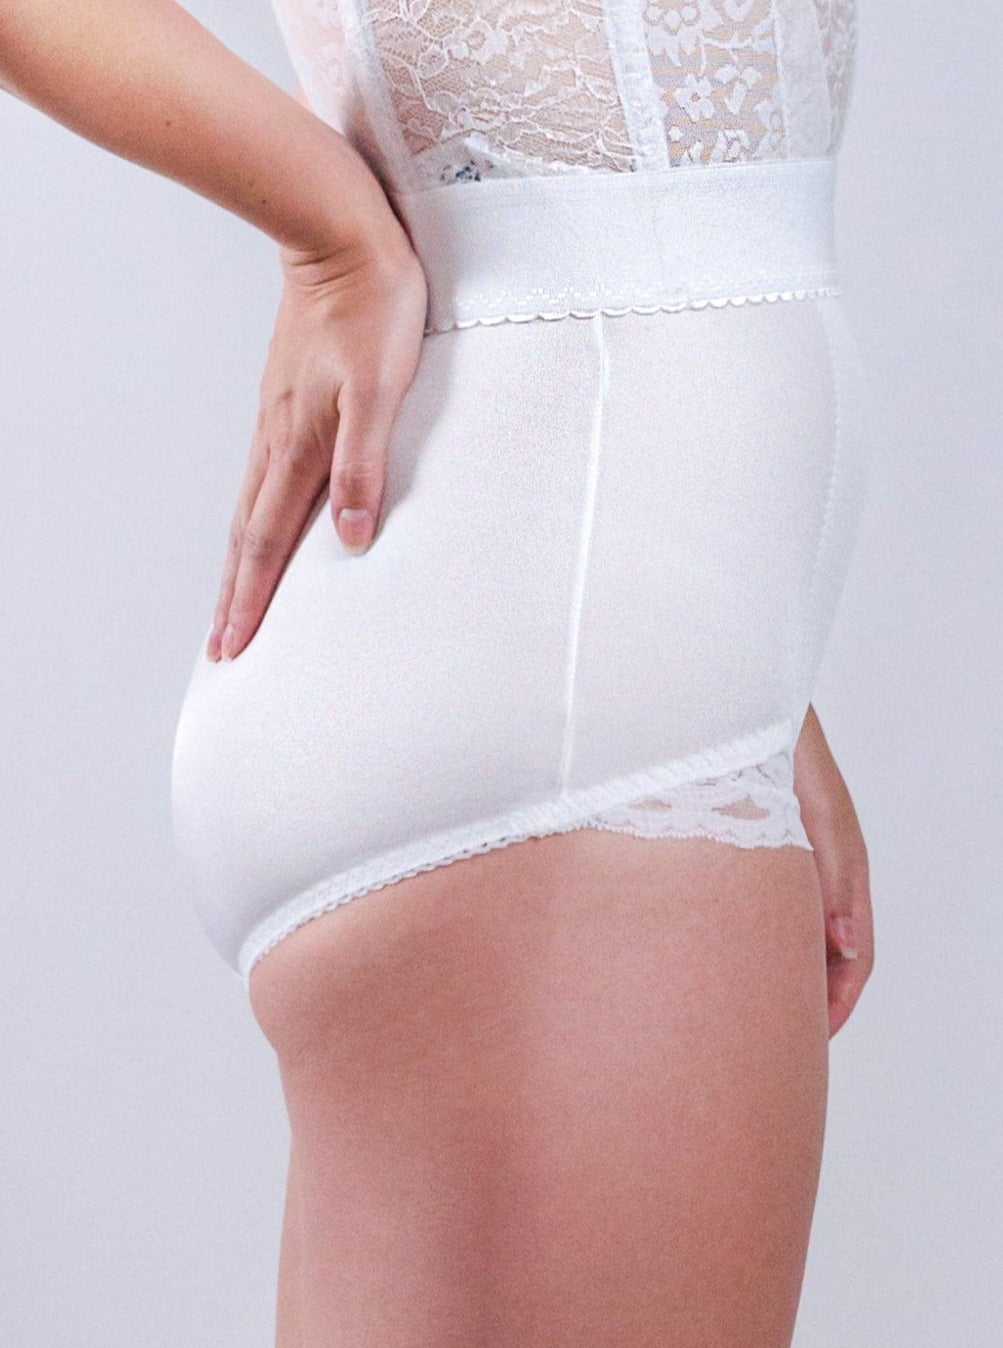 Panty Belt Shape Wear Panty at Rs 400/piece